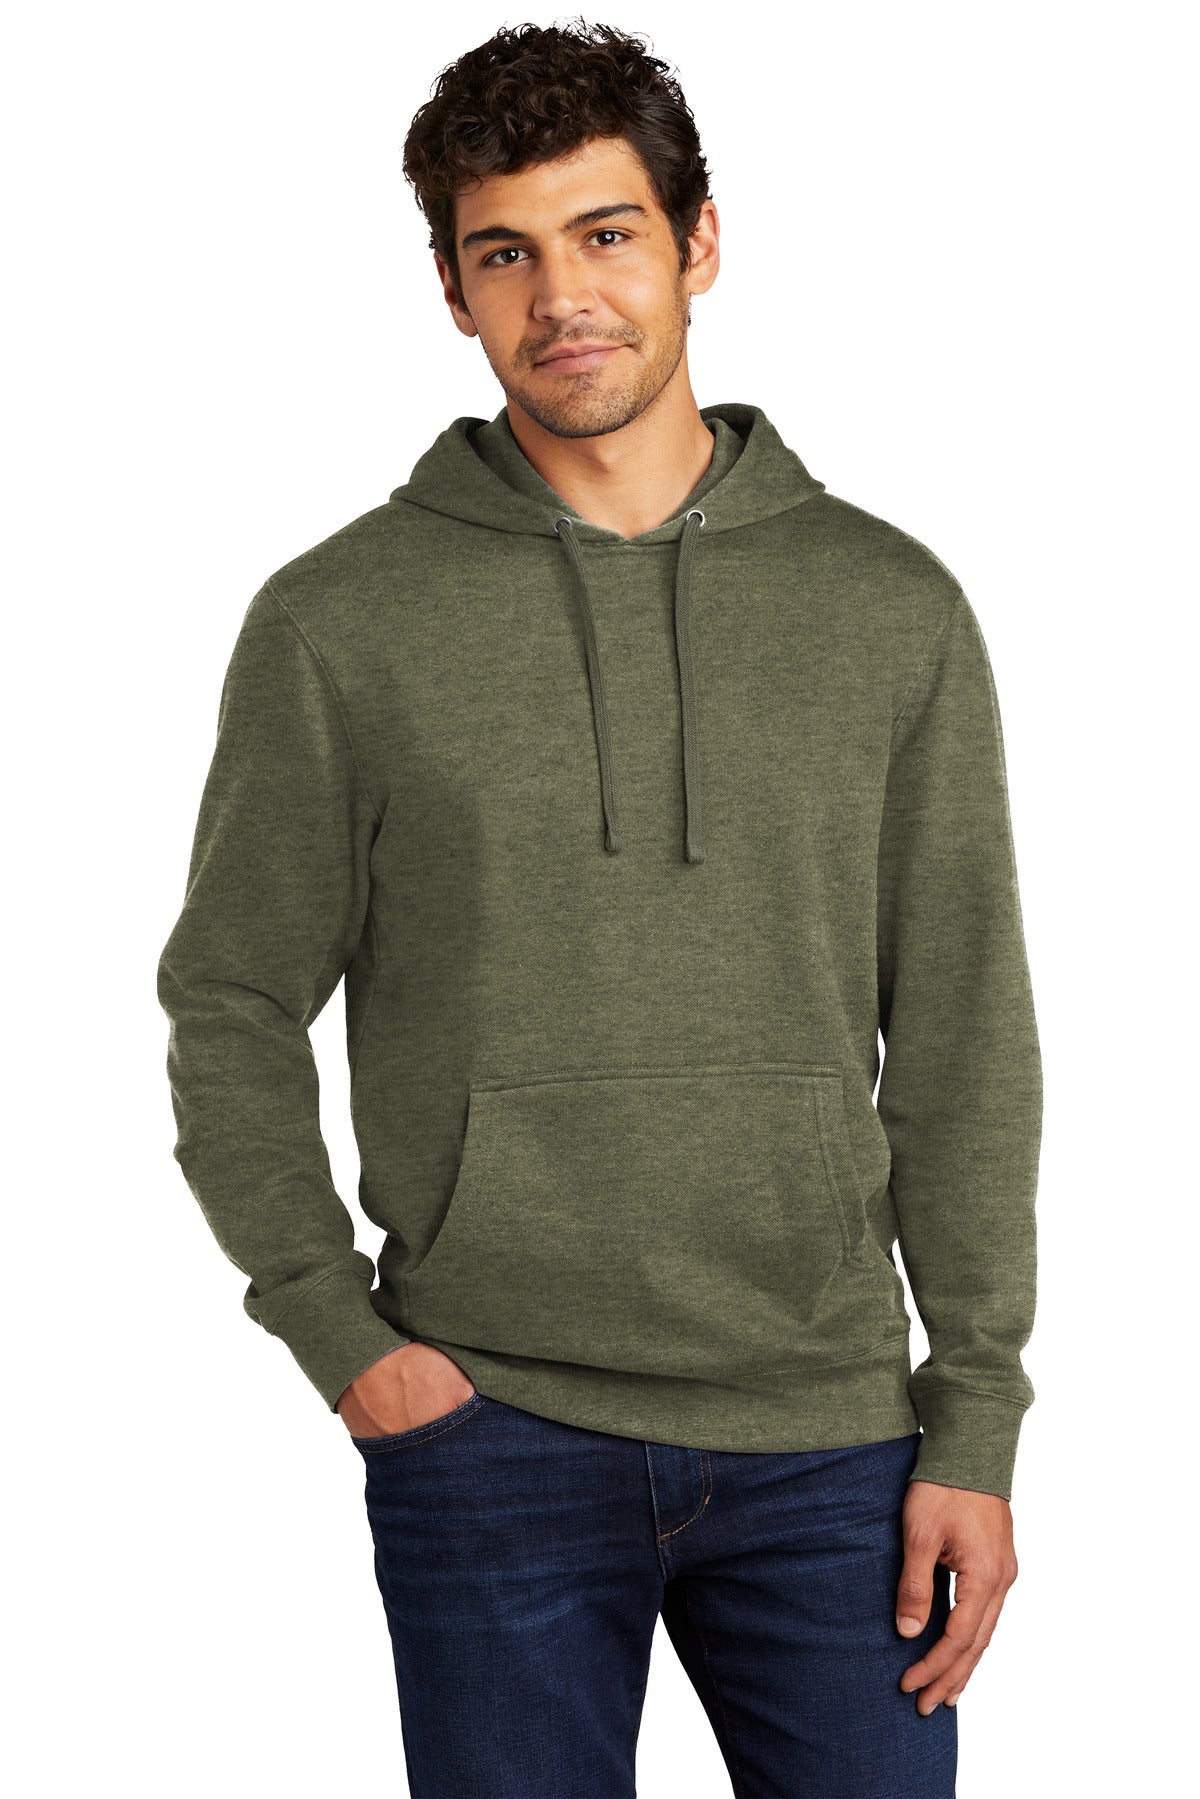 Sweatshirts/Fleece Heathered Olive District